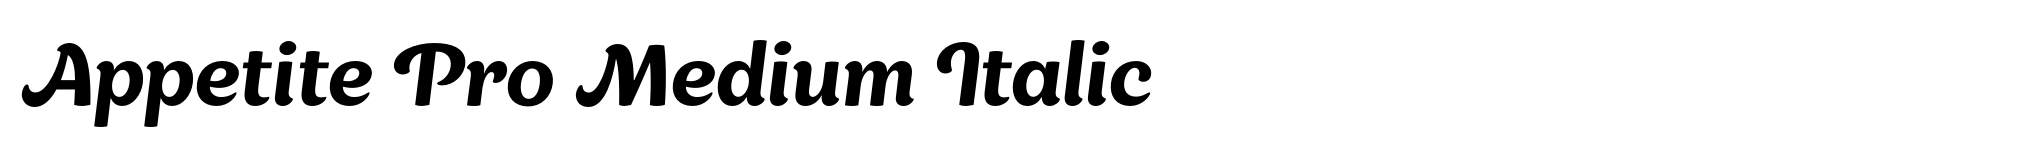 Appetite Pro Medium Italic image